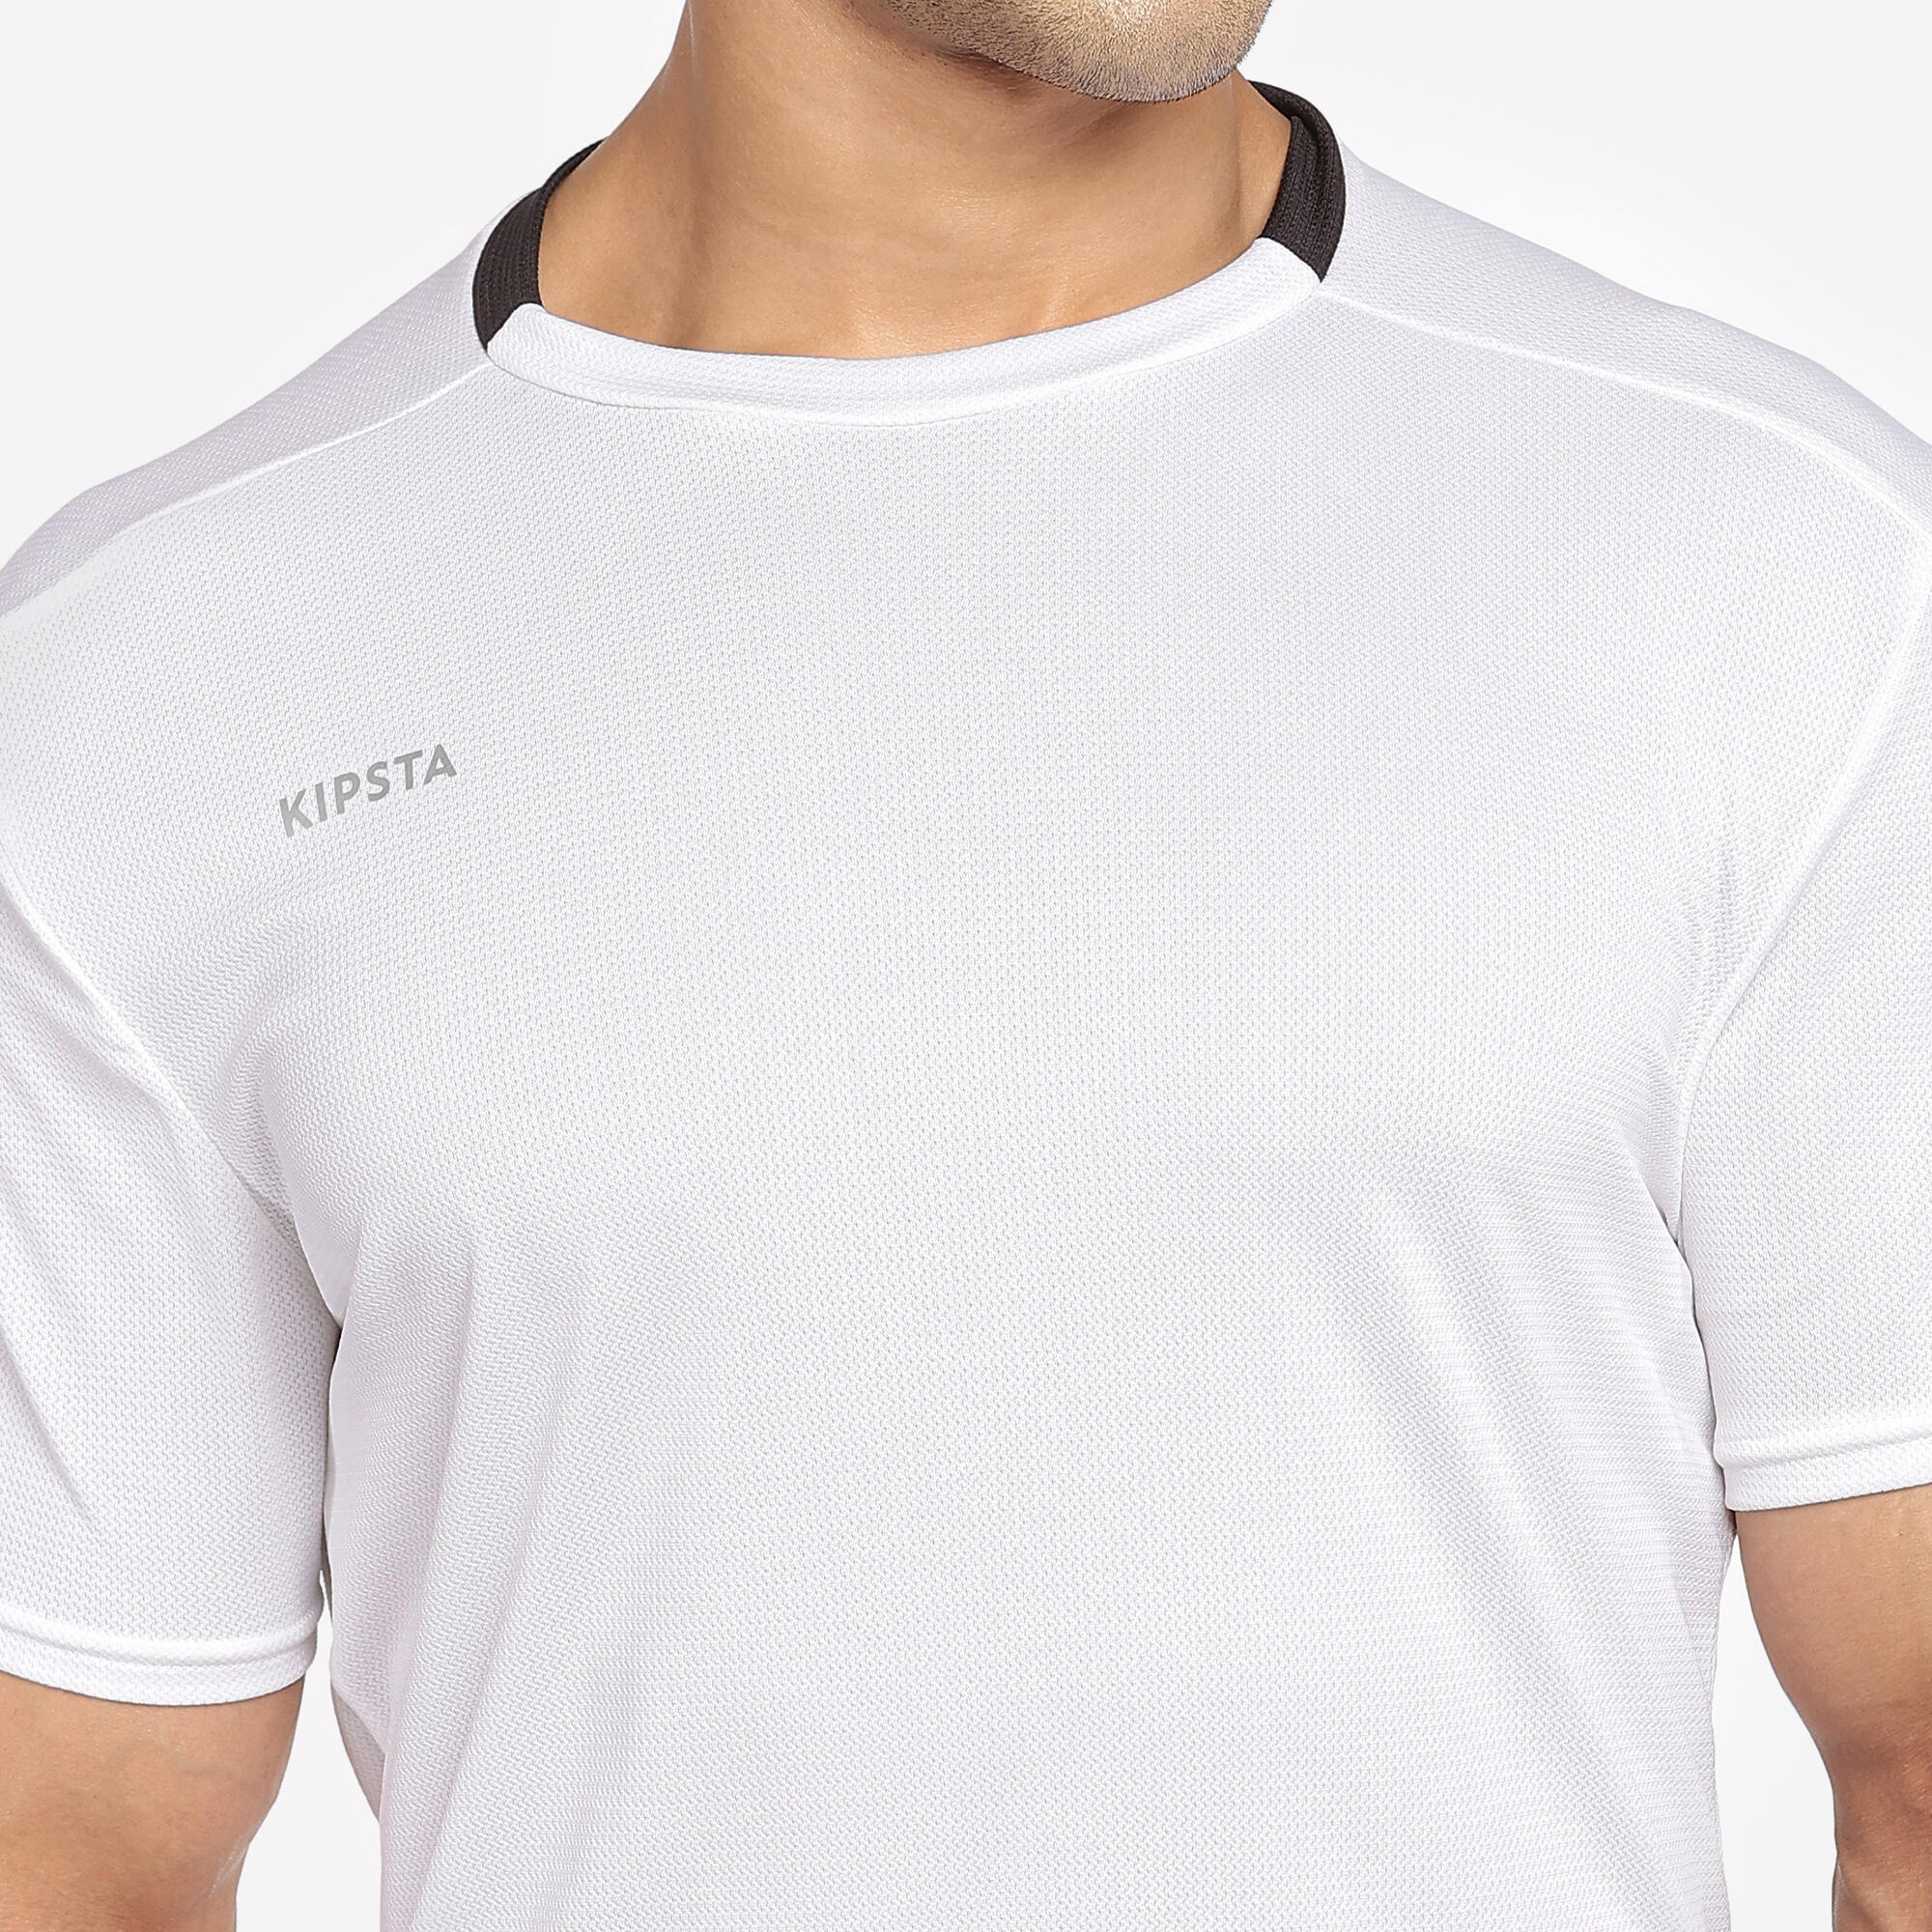 Adult Football Shirt Essential Club - White 6/29